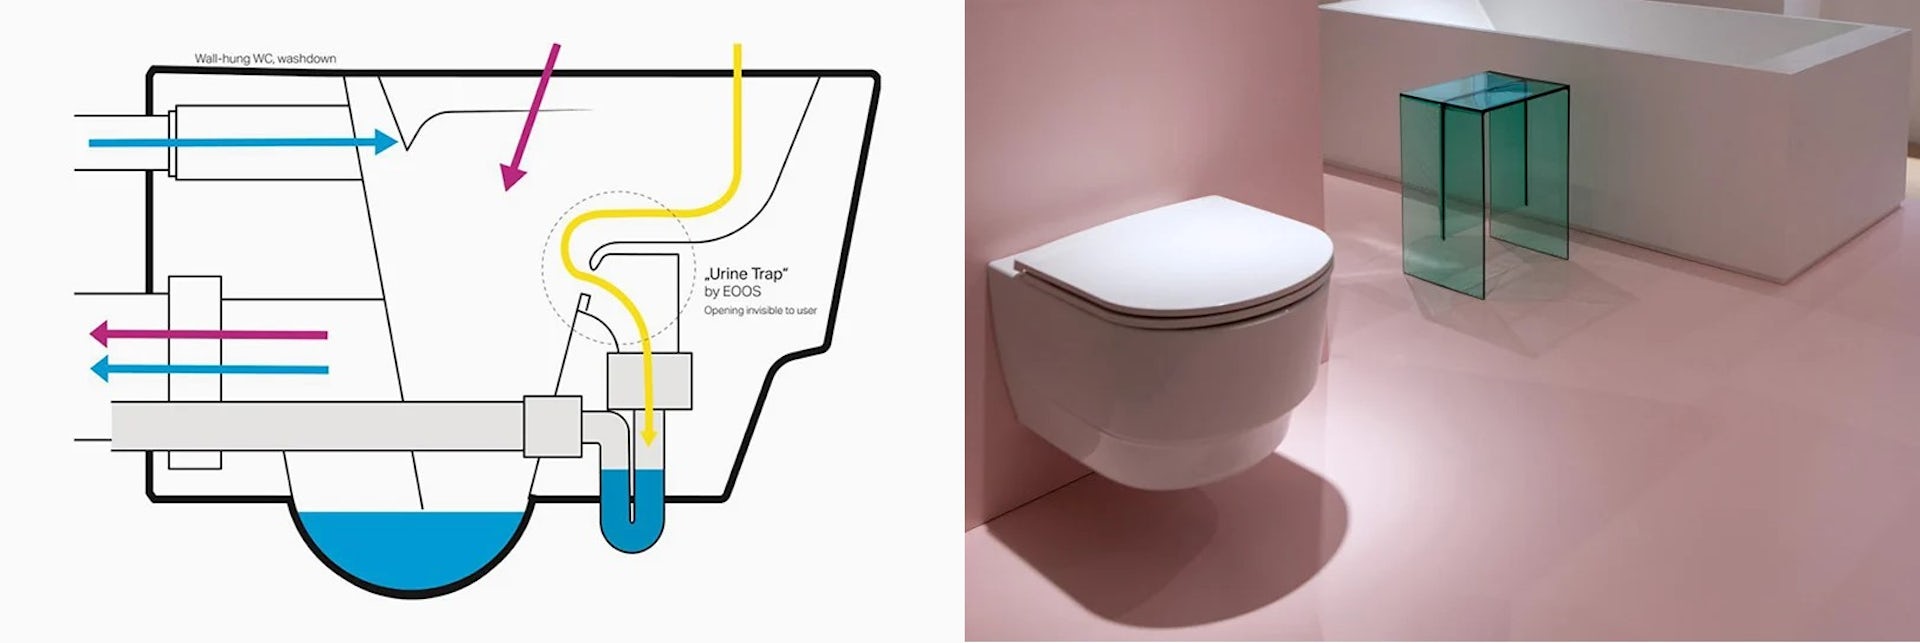 Un grafico che illustra una trappola invisibile per le urine.